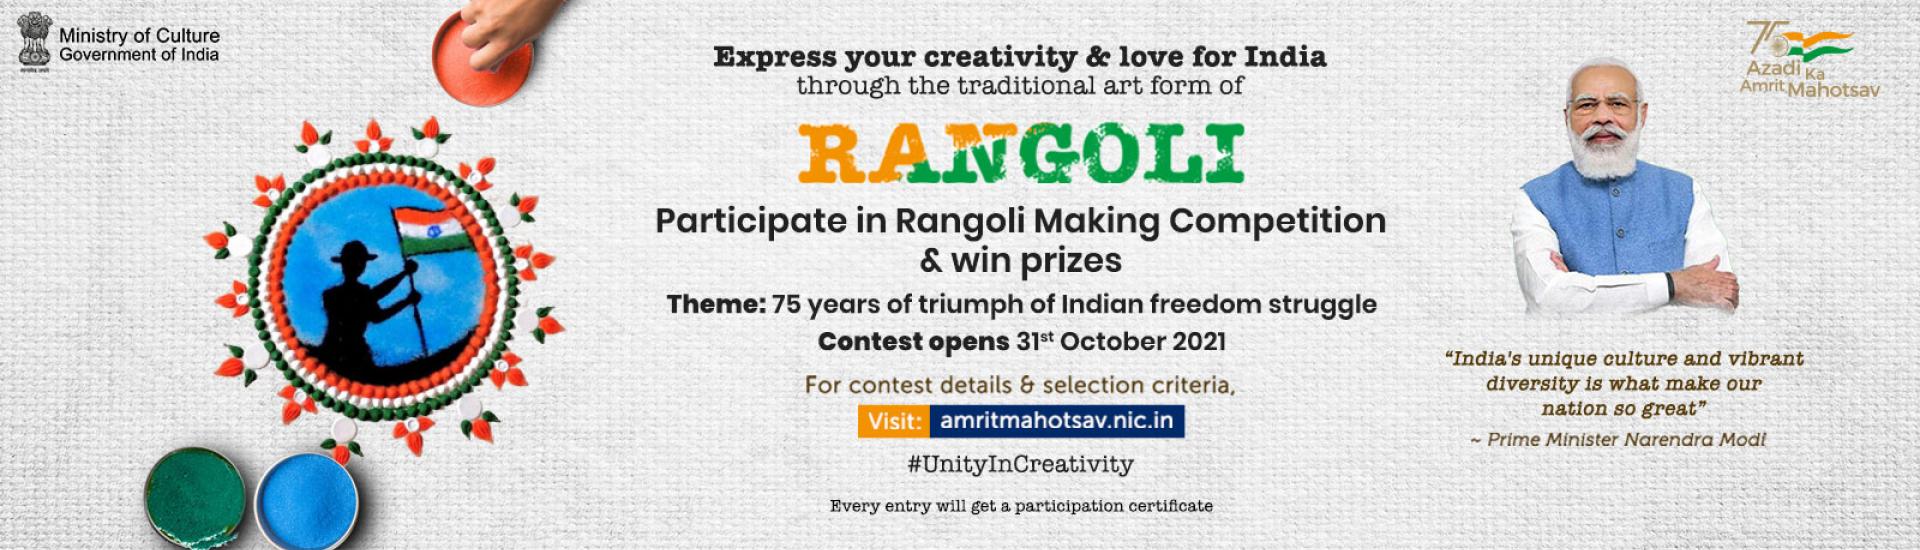 'Rangoli Making' Competition